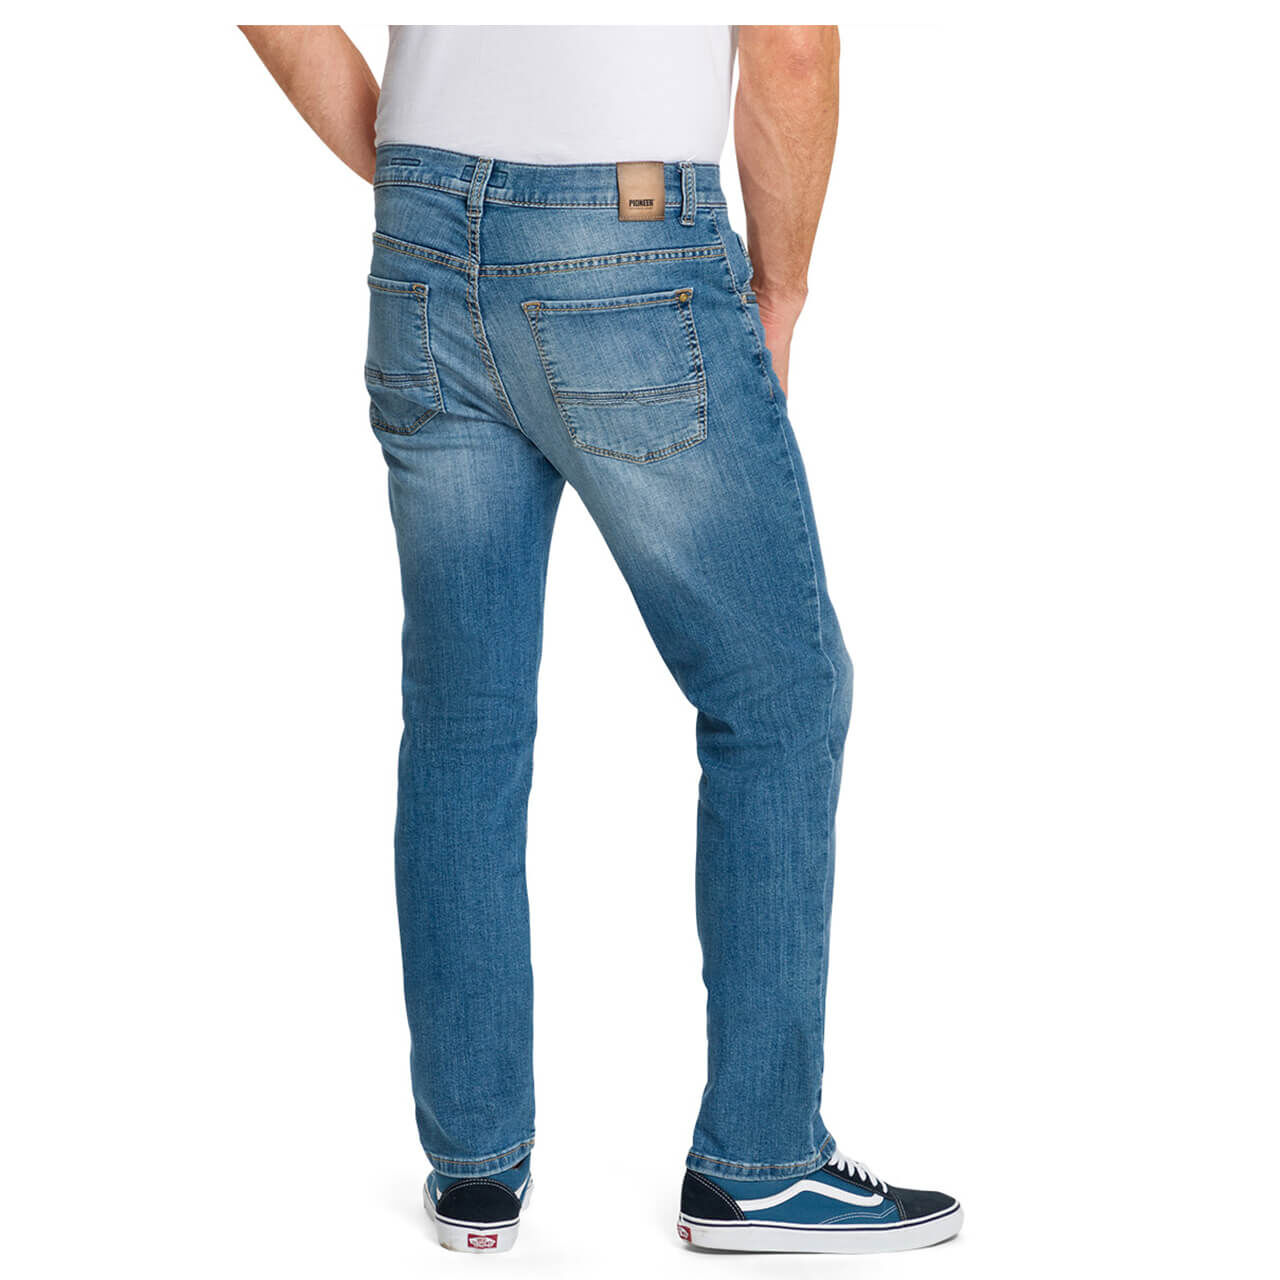 Pioneer Rando Jeans Megaflex light blue used buffies